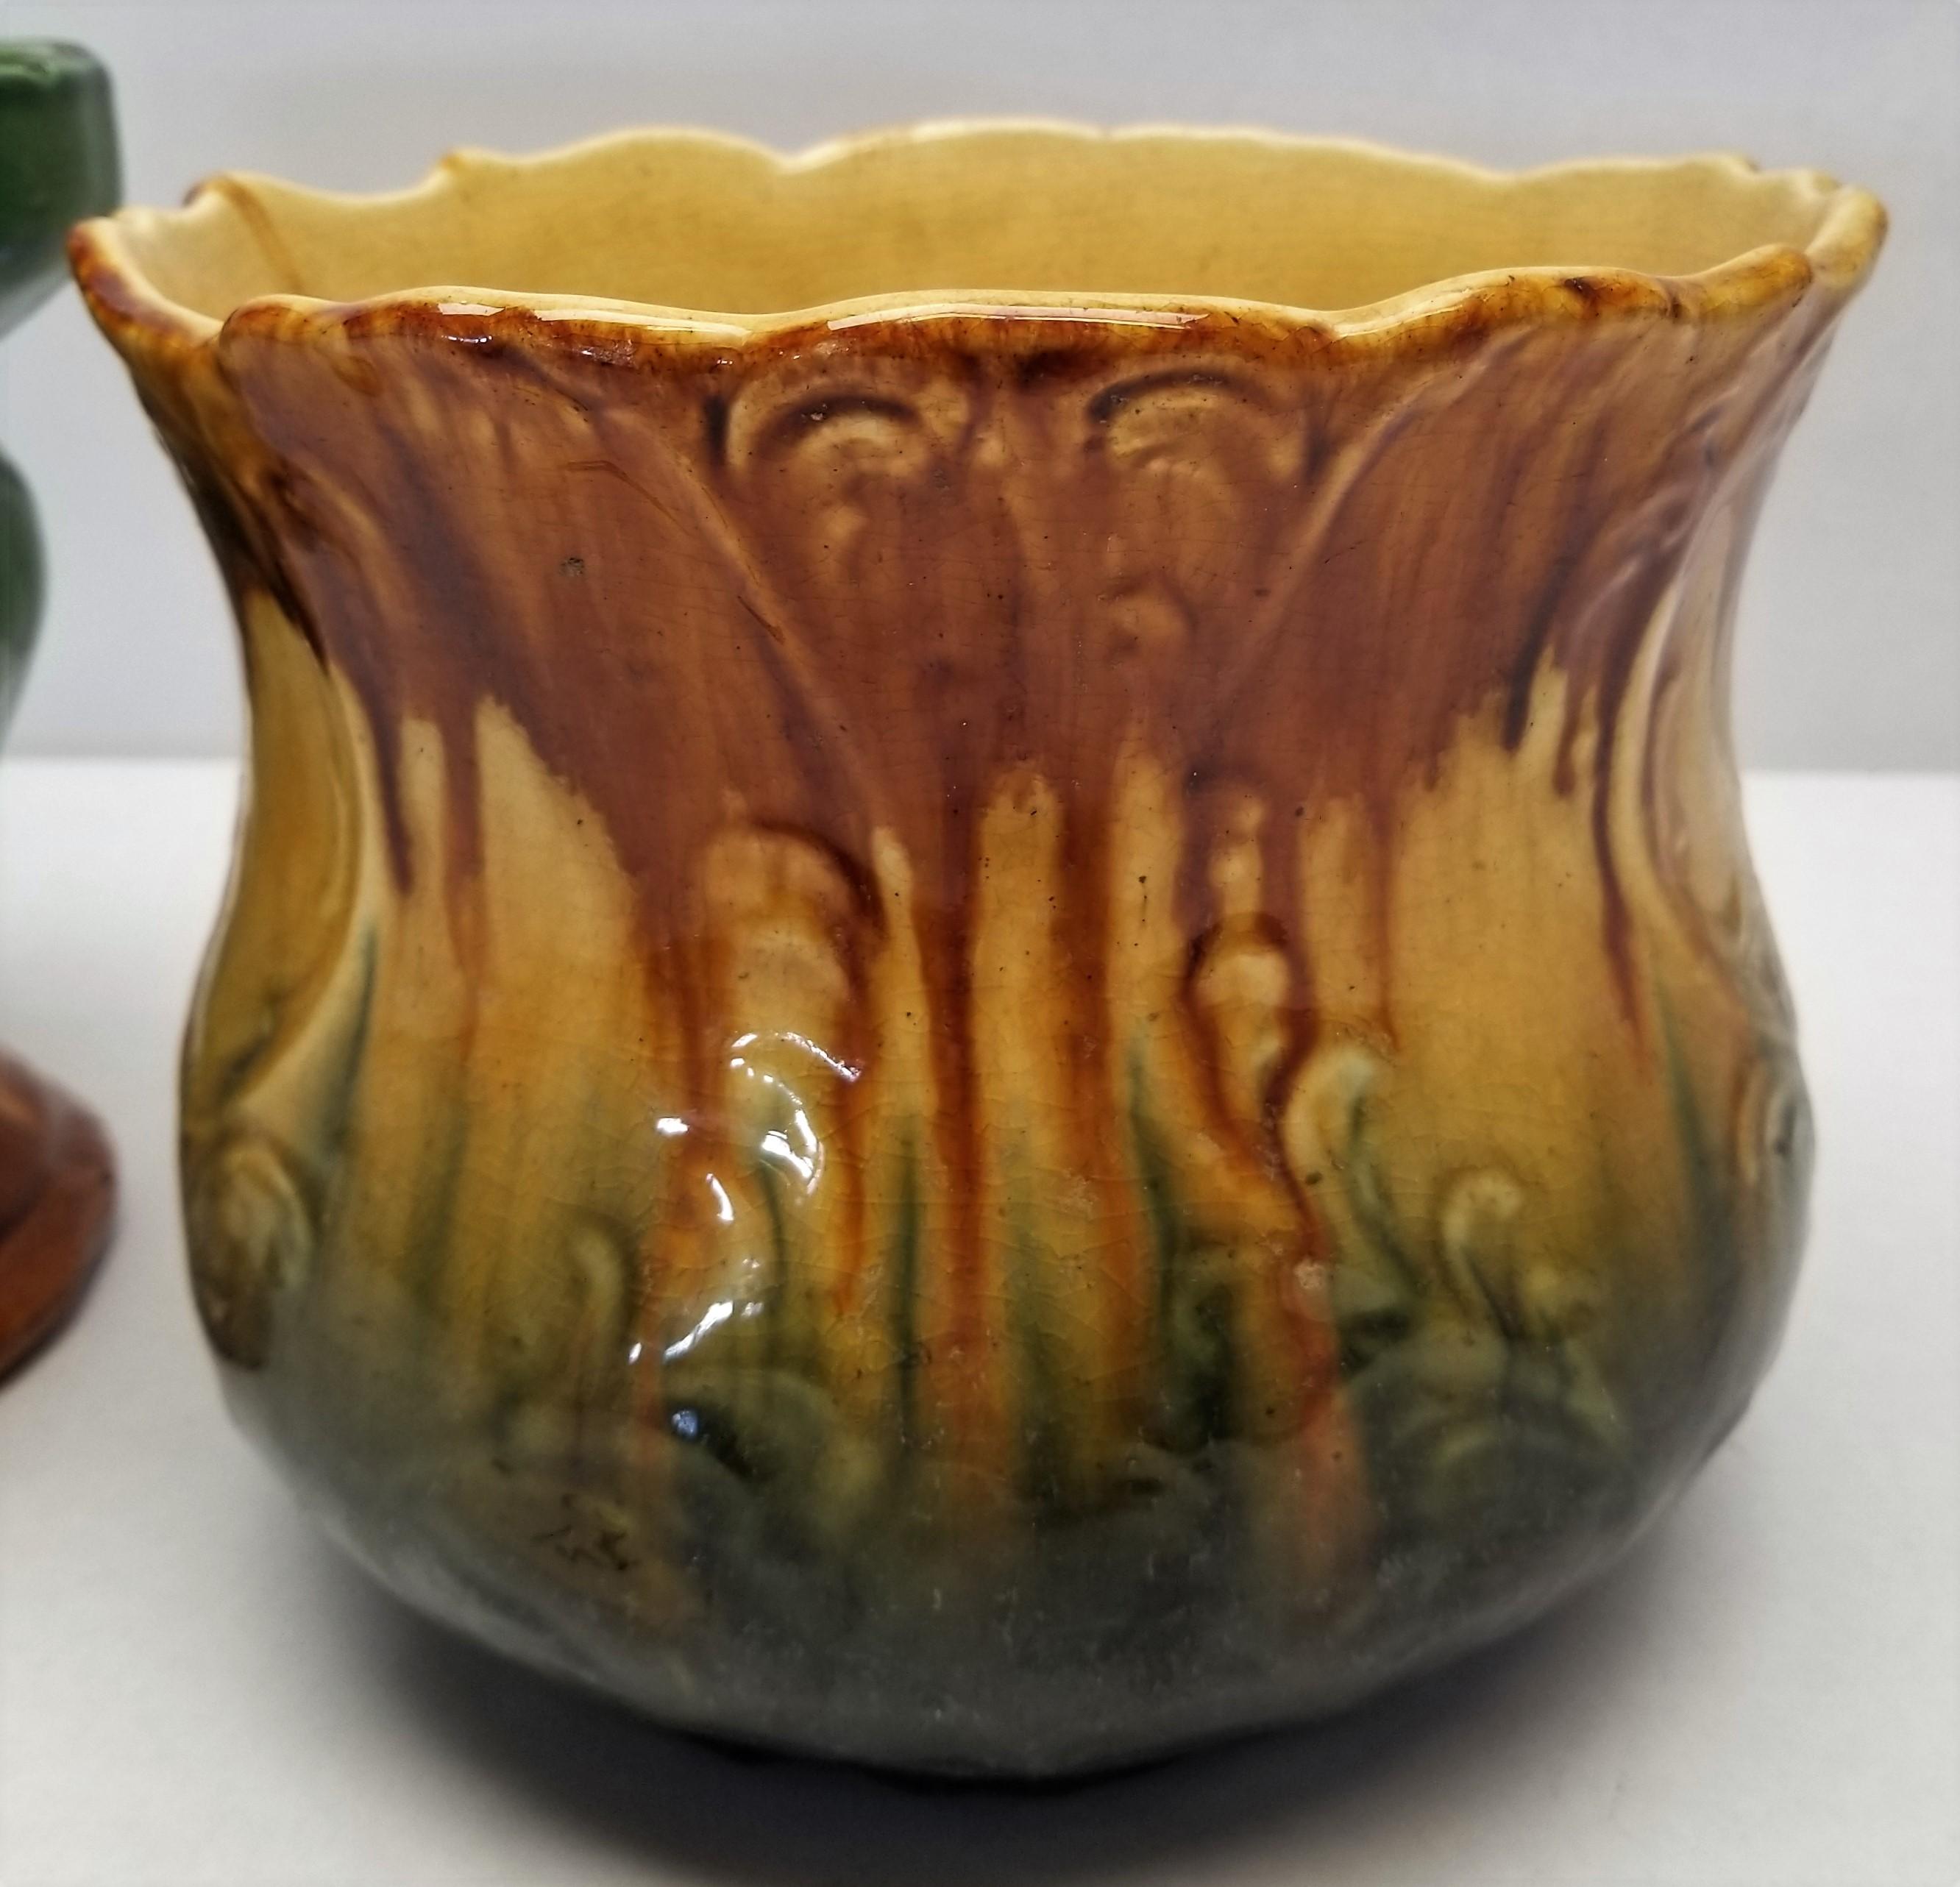 2 - Possible Roseville Vases?Pots